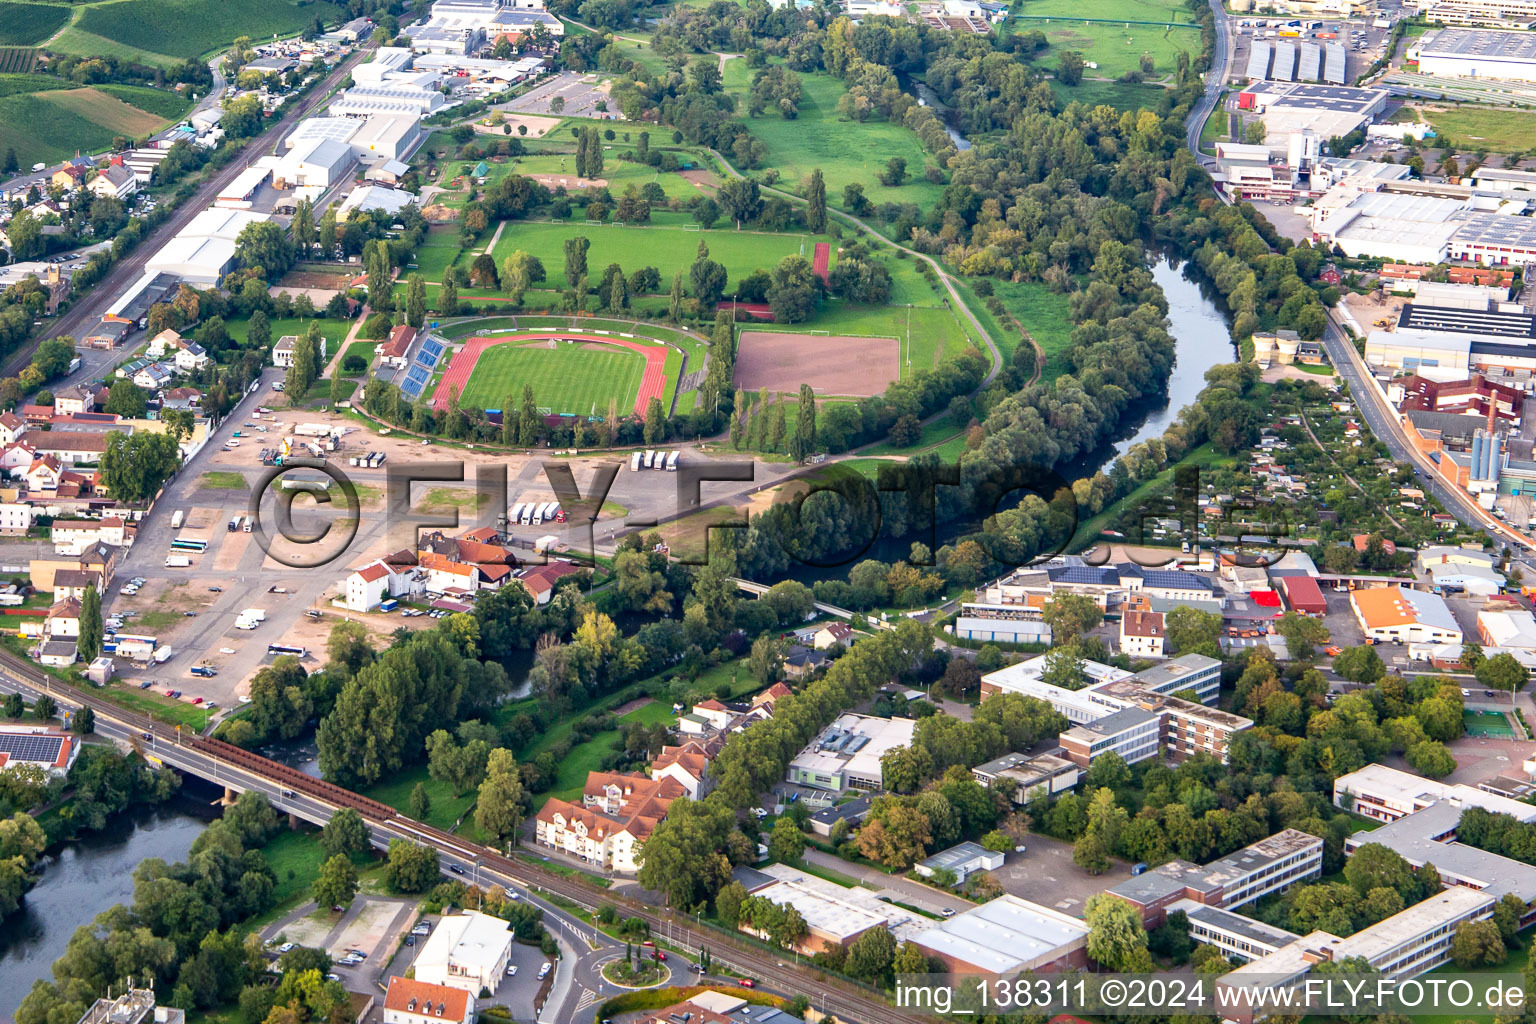 Friedrich-Moebus-Stadion in Bad Kreuznach im Bundesland Rheinland-Pfalz, Deutschland